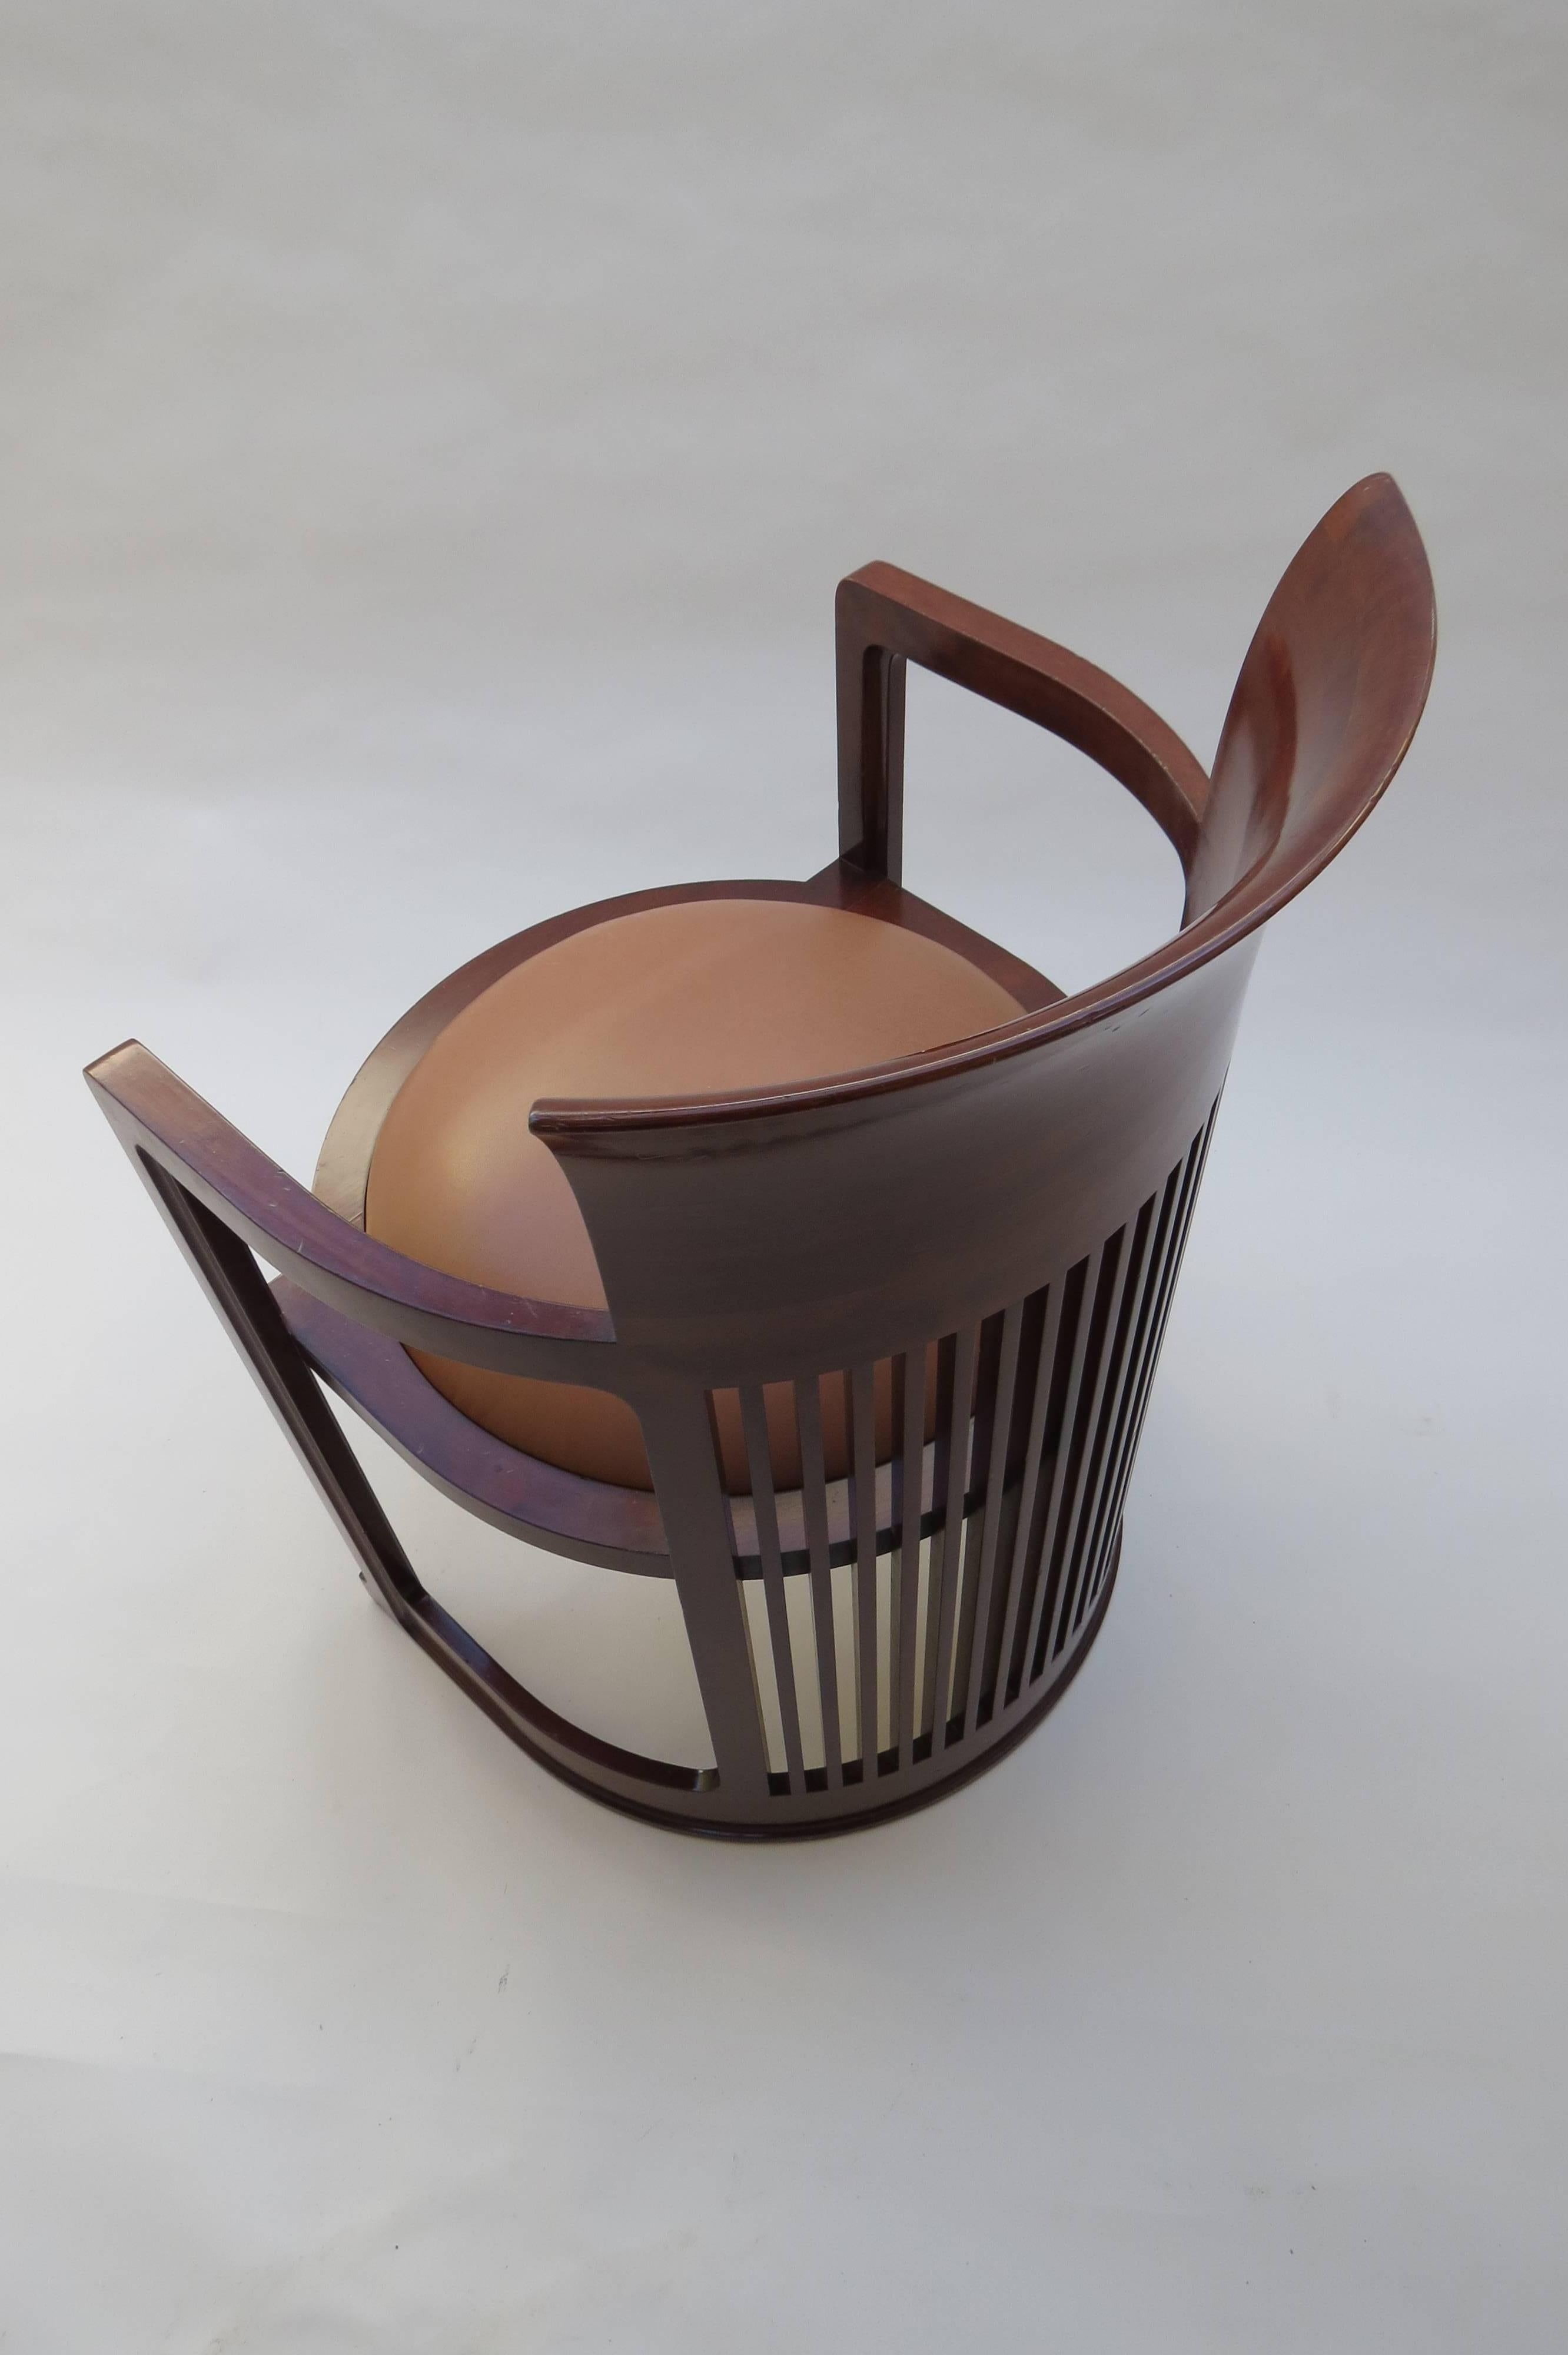 Barrel Taliesin Chair designed by Frank Lloyd Wright 2